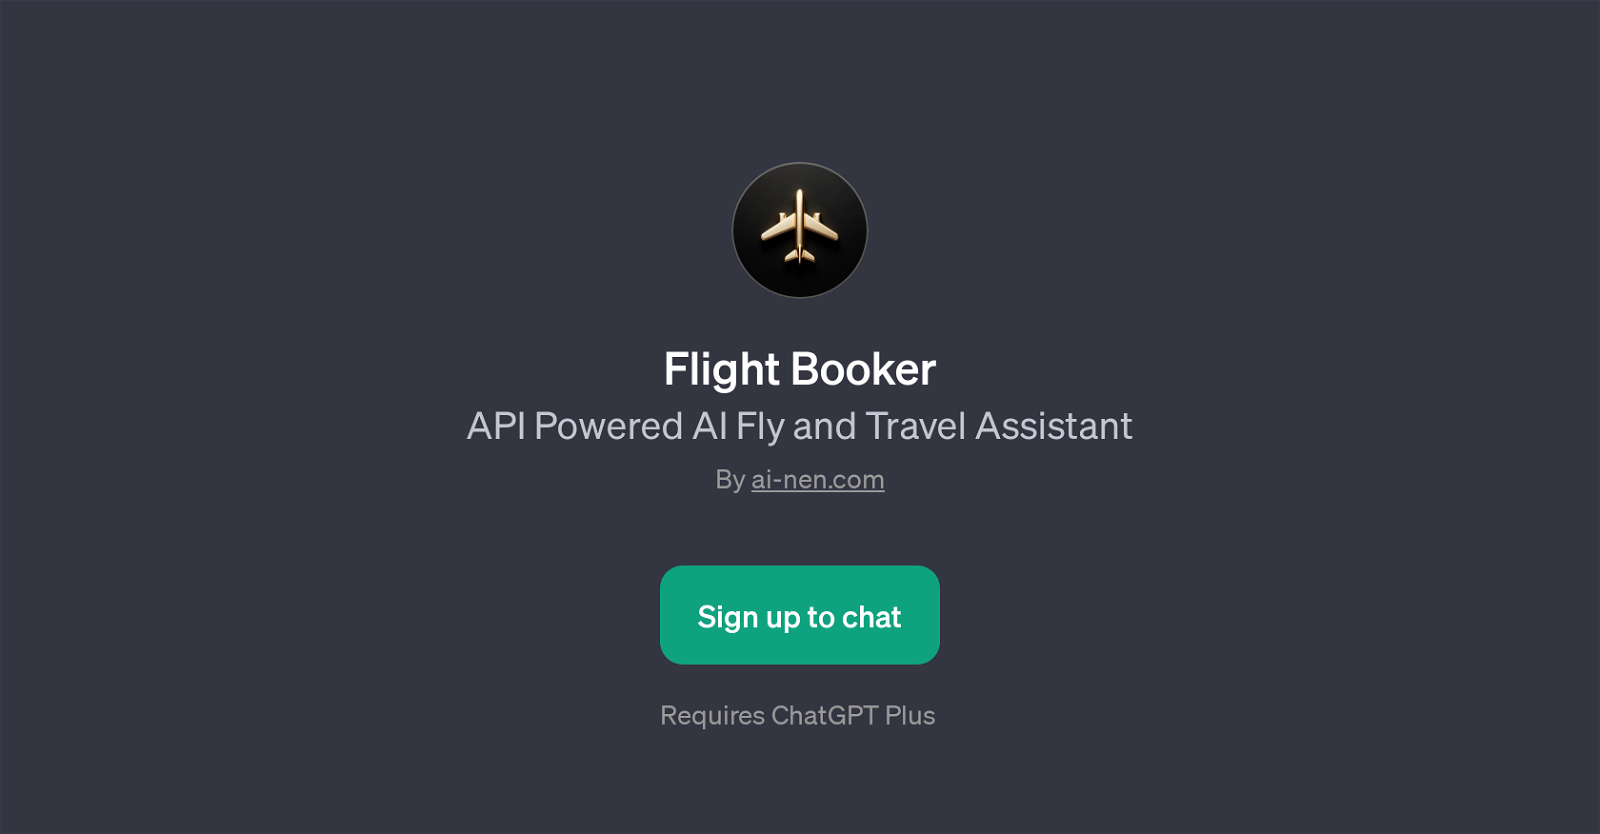 Flight Booker website